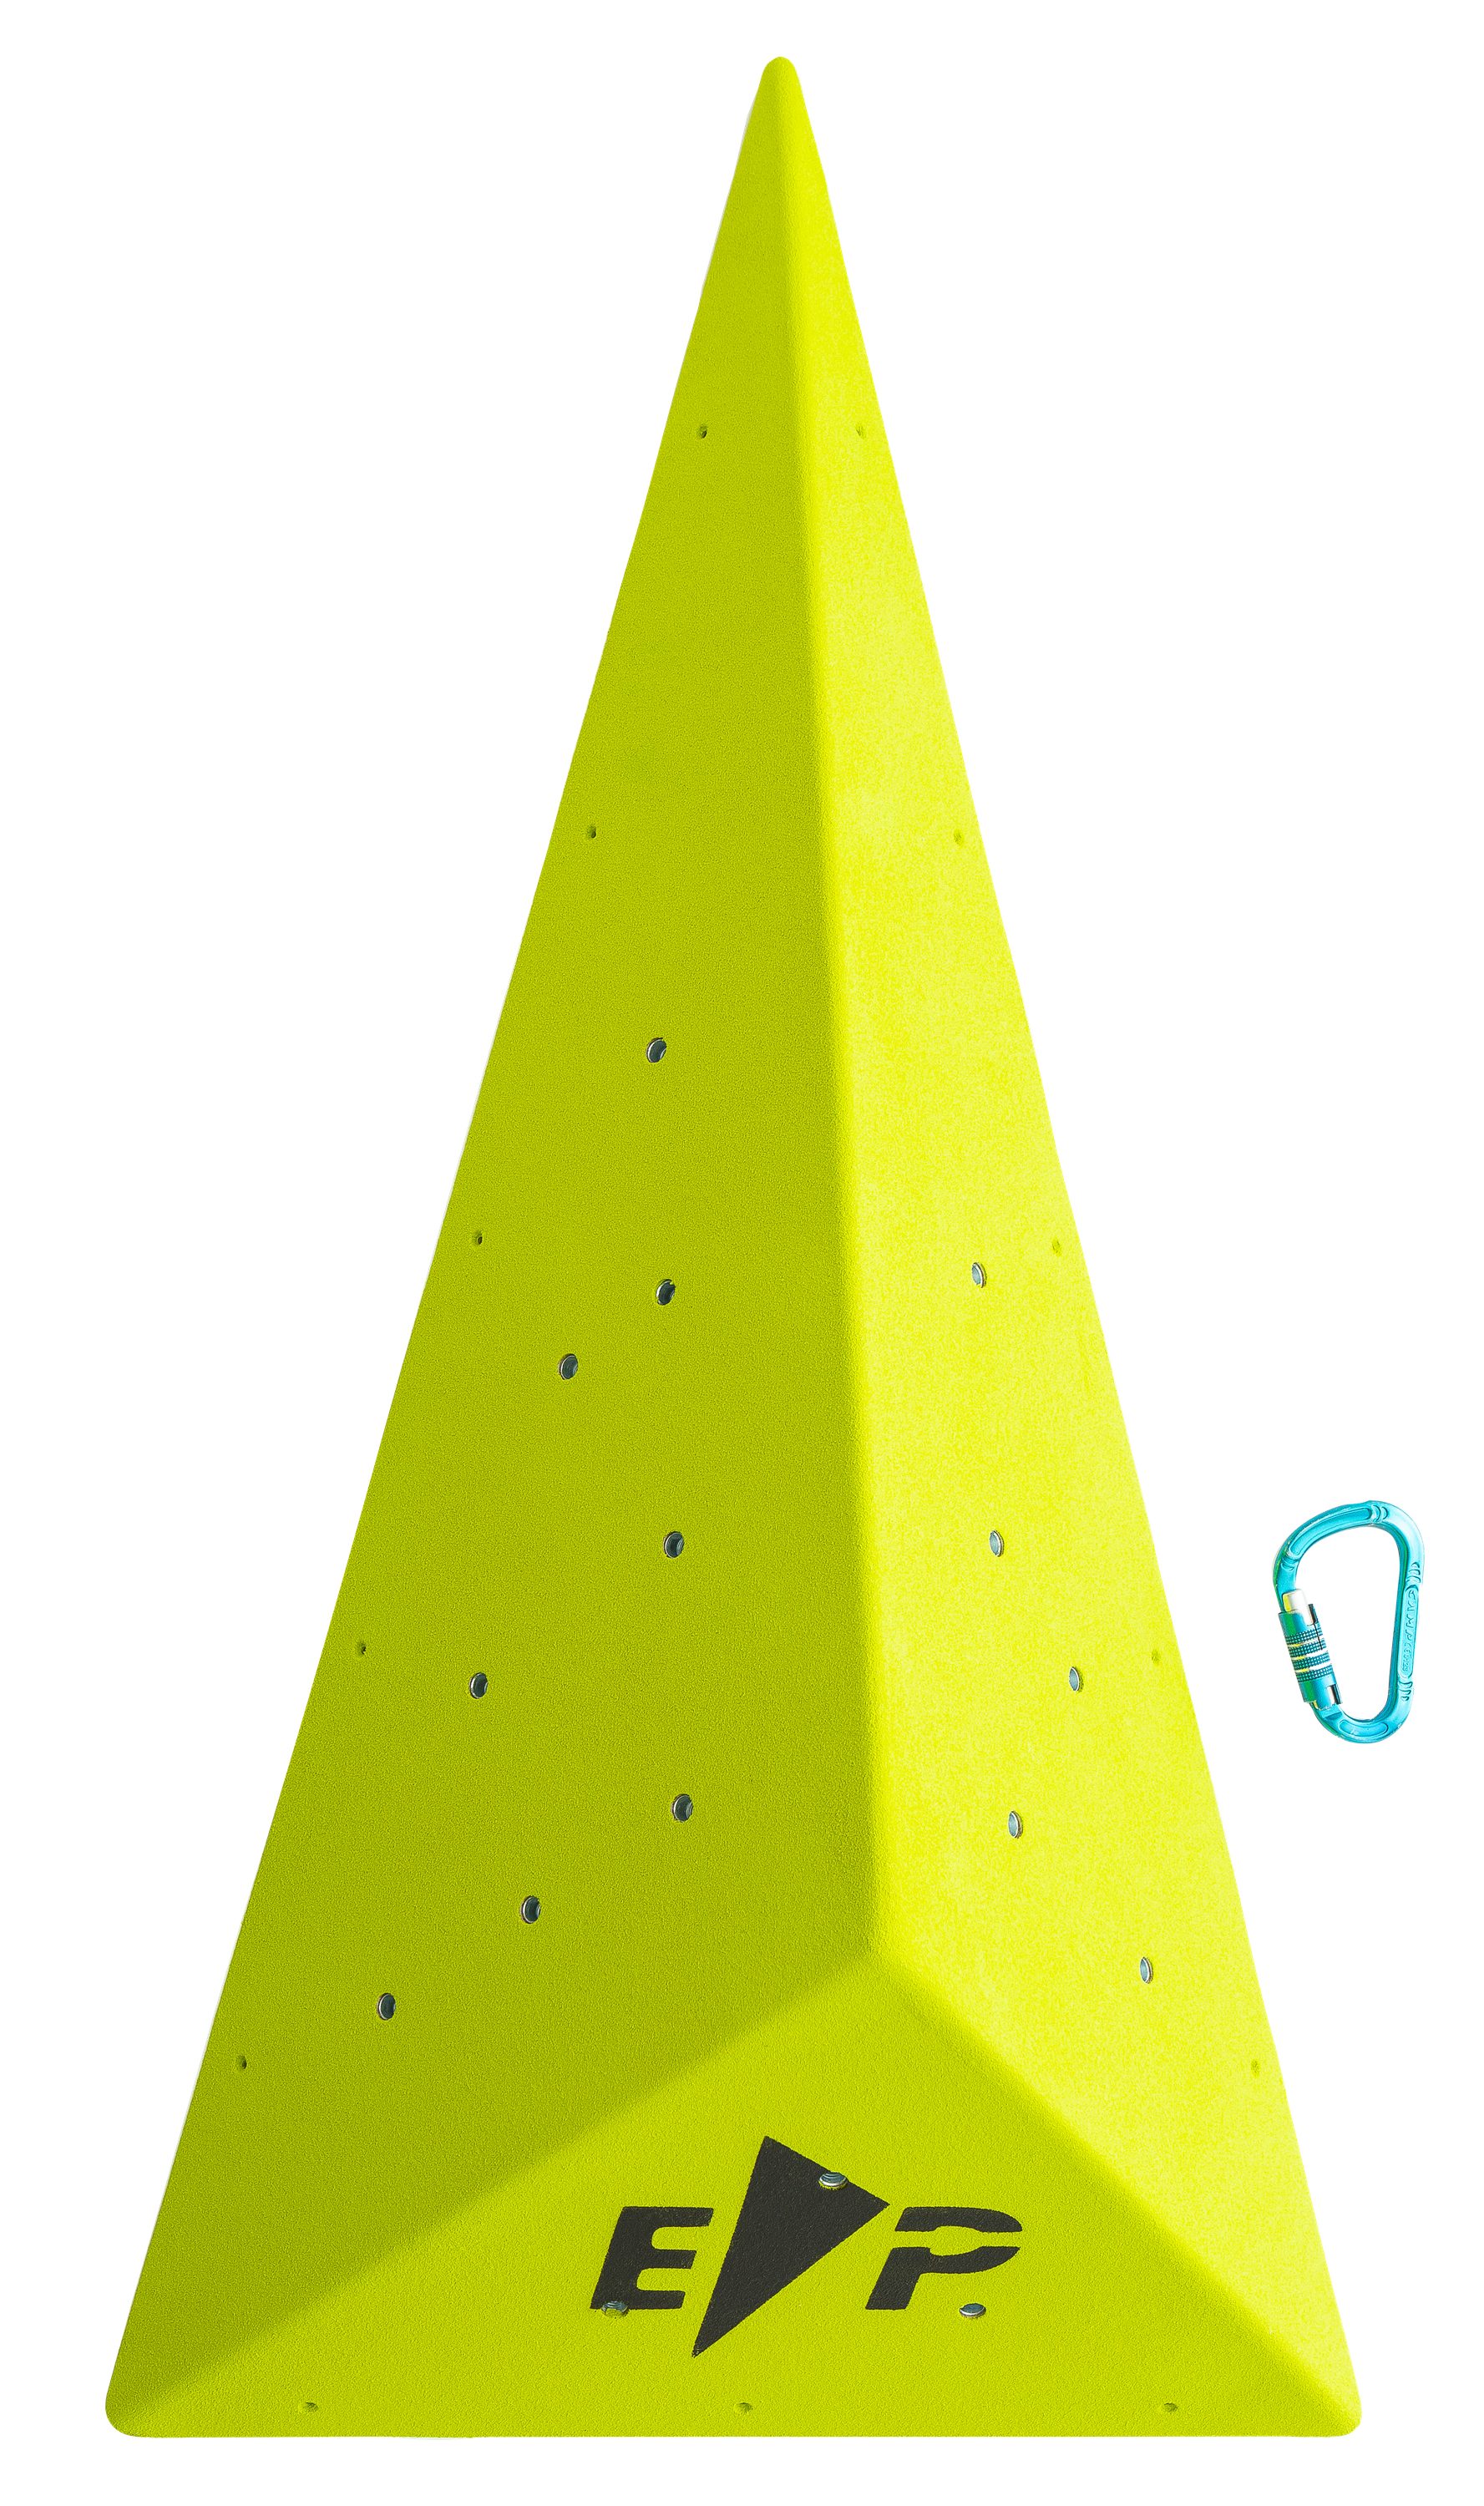 Spielzeug Kletter-Trainingsgeräte Entre Prises Kletterwand Makro Kleopatra Kletterwandelement - Entre Prises